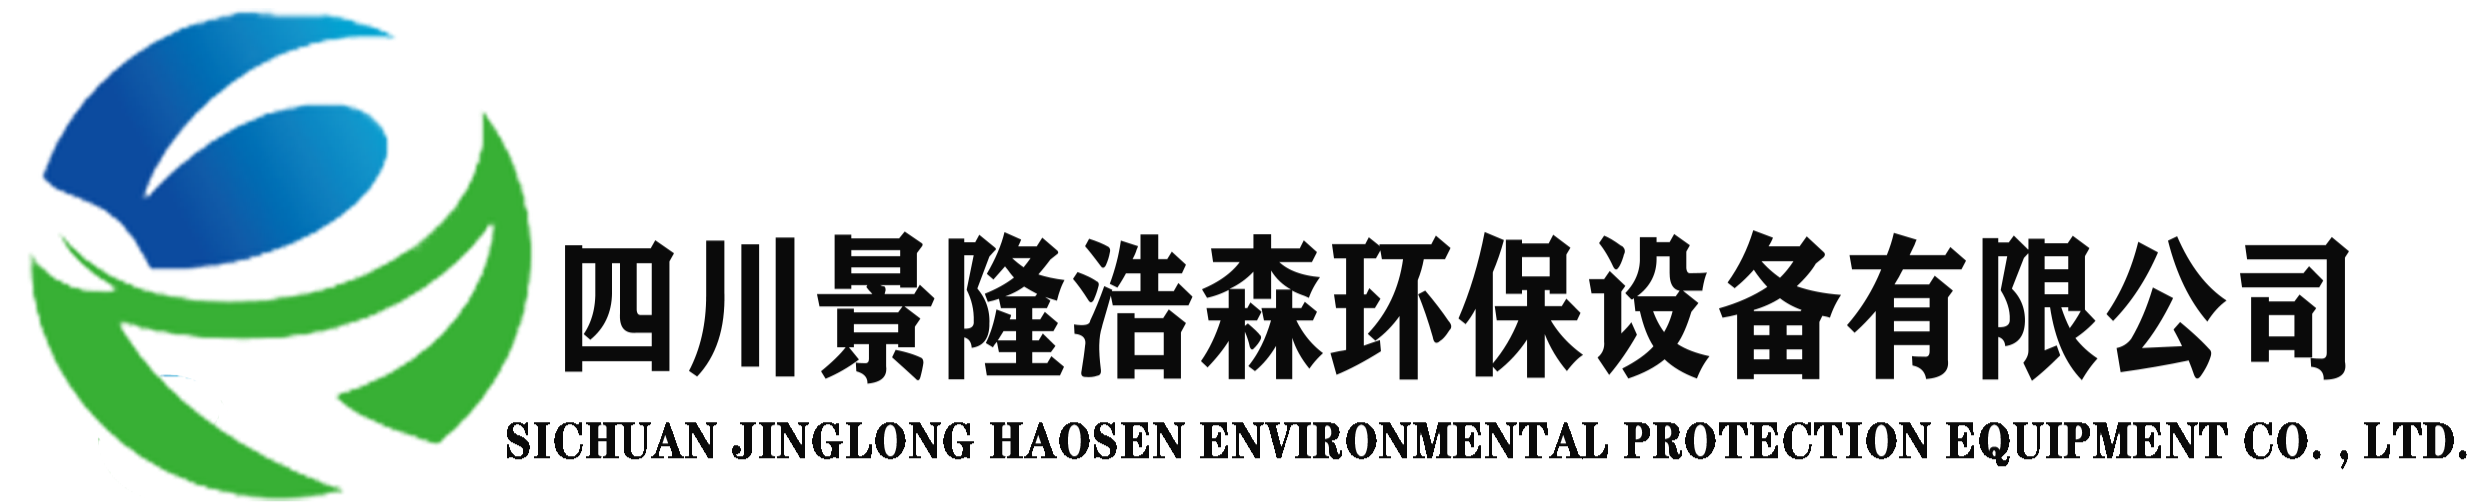 网站首页-四川景隆浩森环保设备有限公司